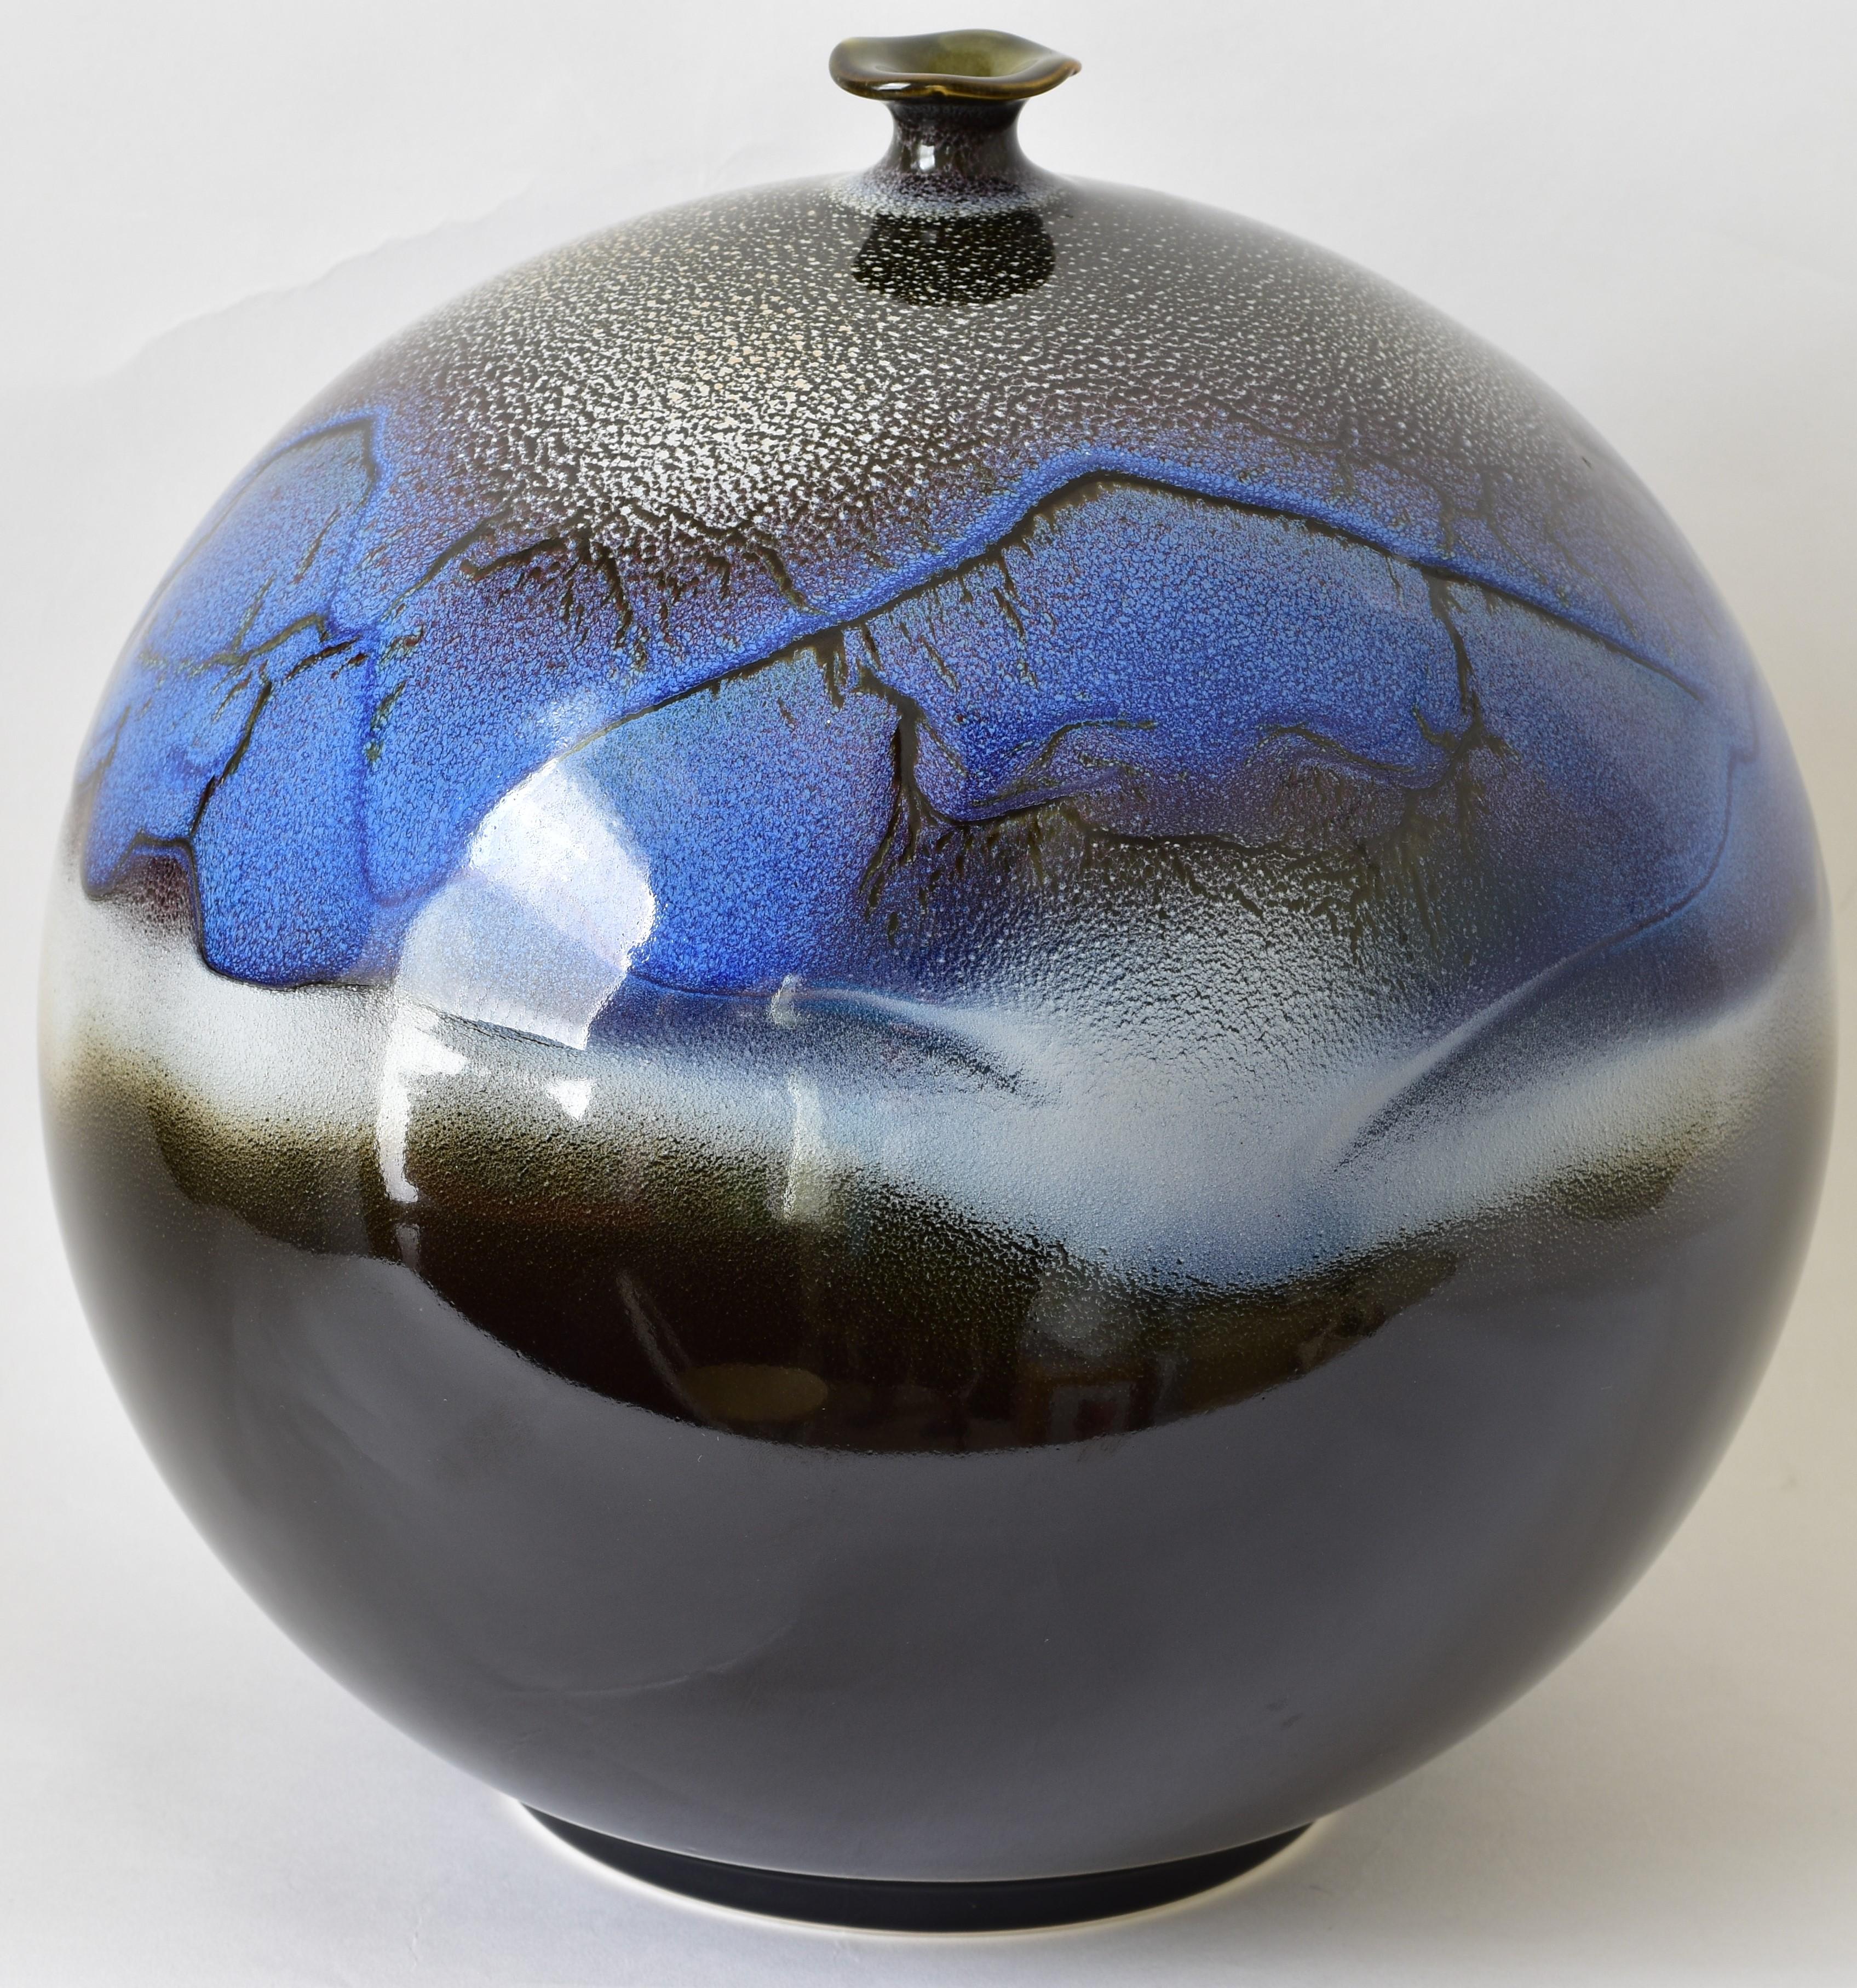 Glazed Japanese Contemporary Blue Black White Porcelain Vase by Master Artist For Sale